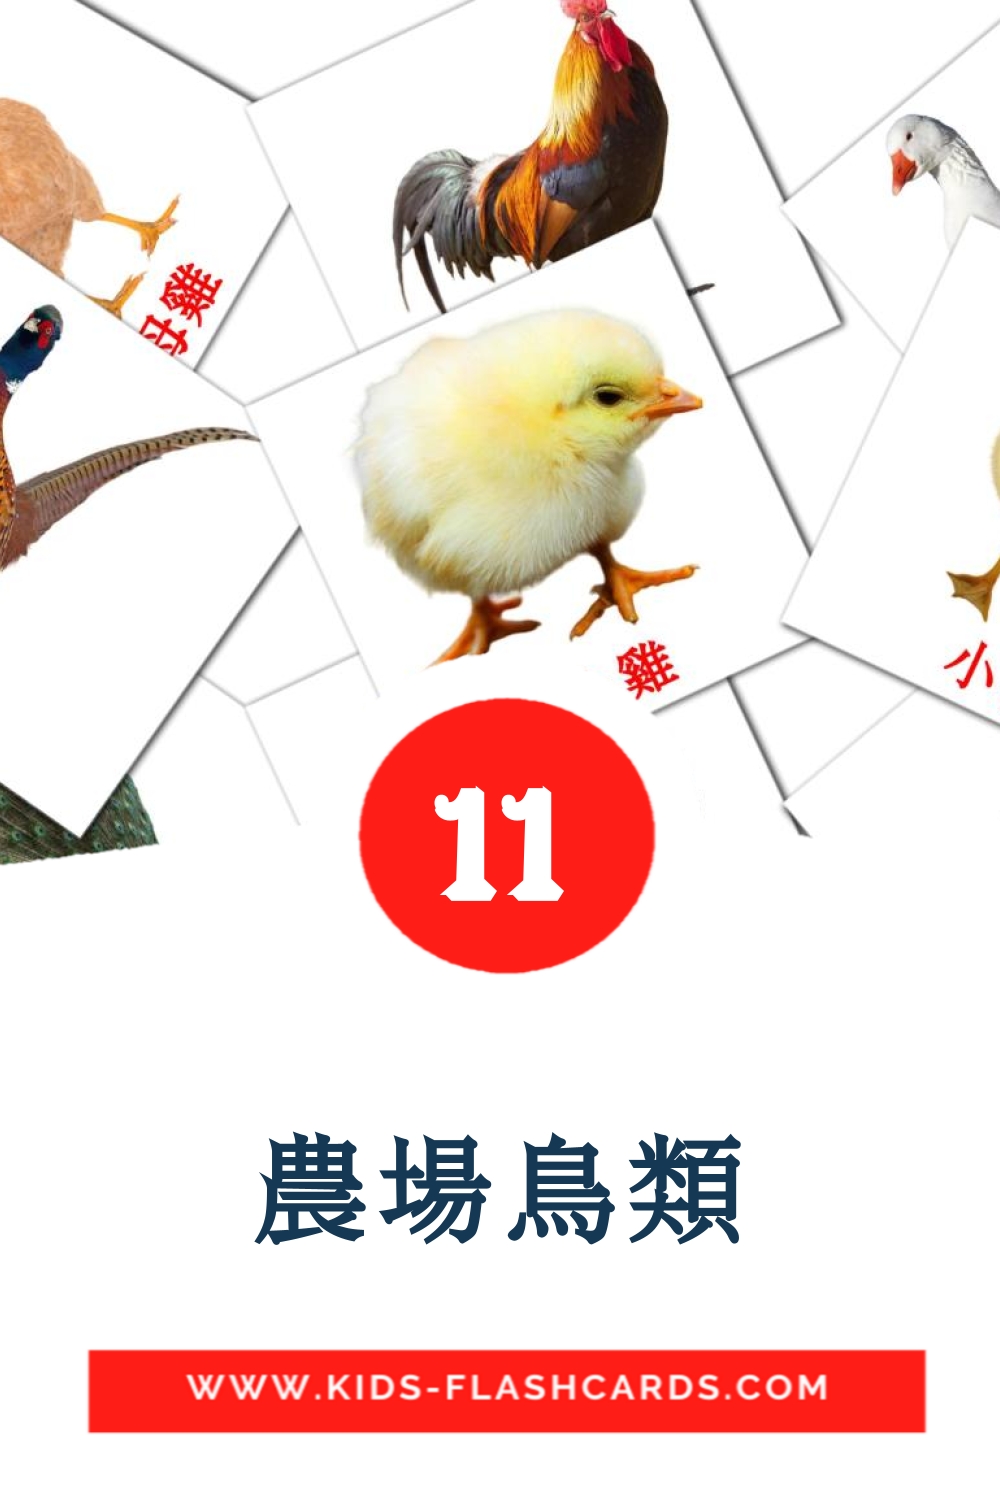 11 農場鳥類 Picture Cards for Kindergarden in chinese(Traditional)